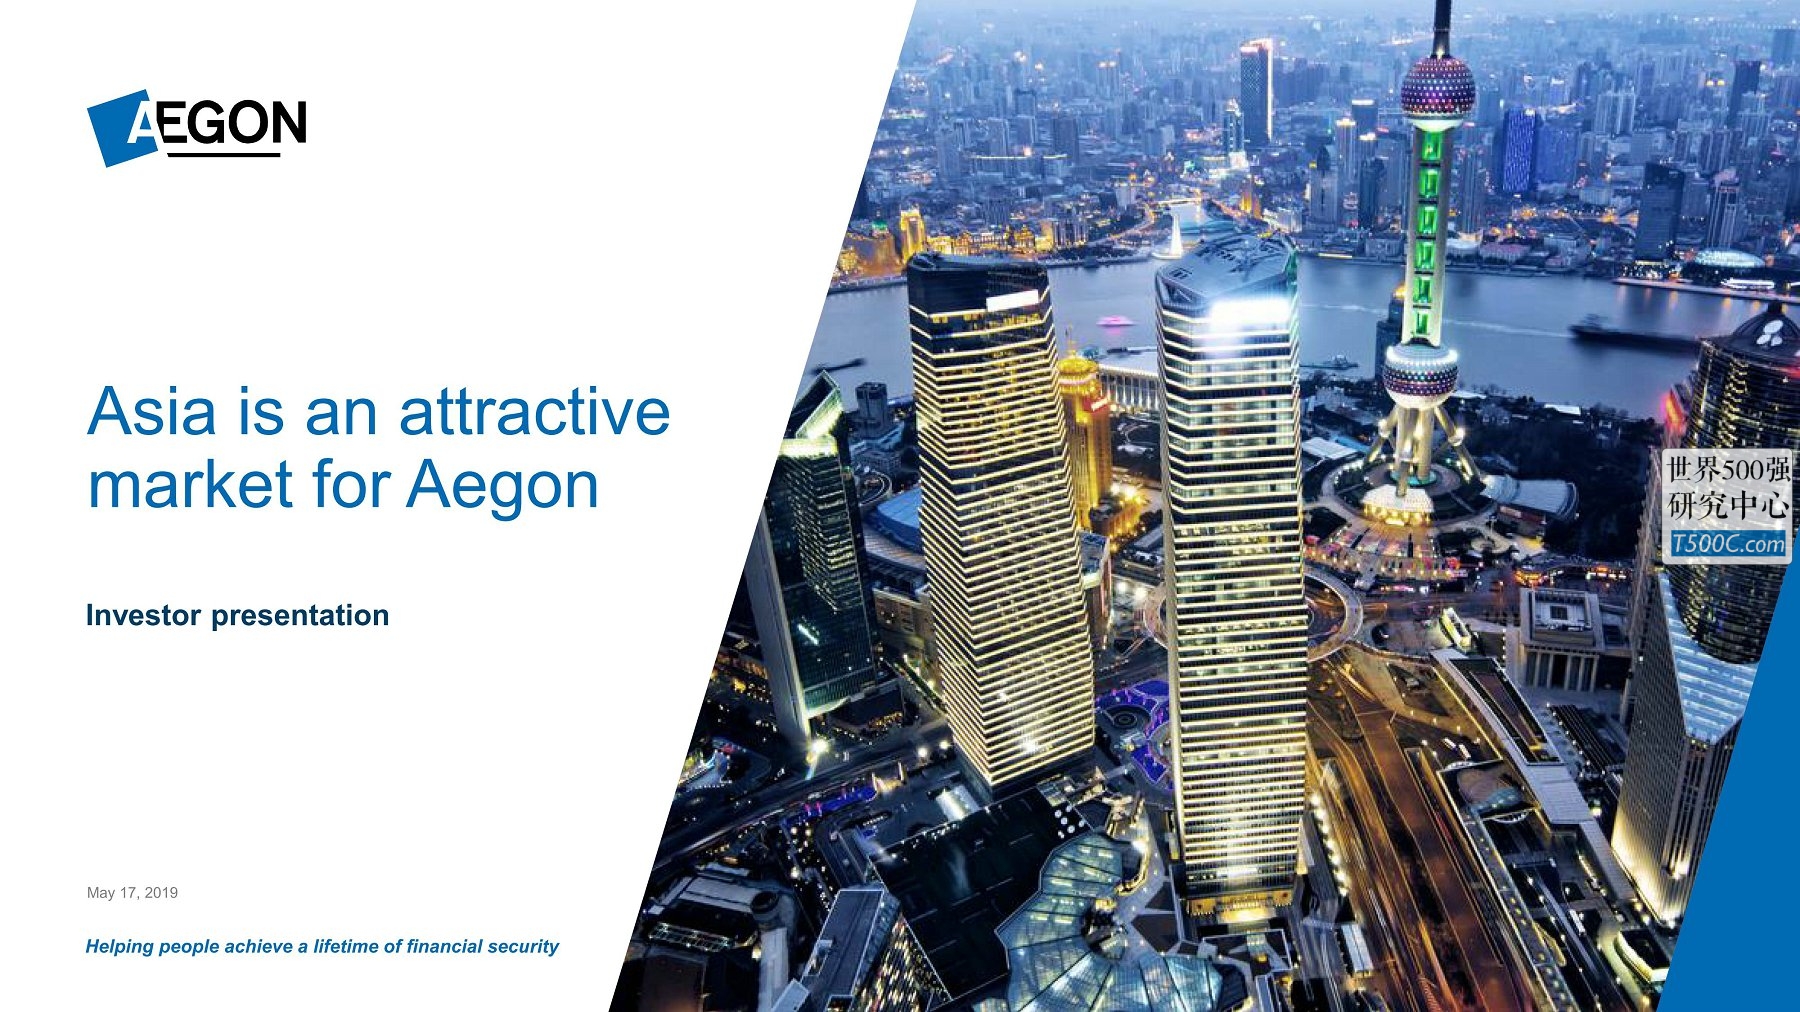 荷兰全球人寿保险Aegon_PPT样式_2019_T500C.com_asia-is-an-attractive-market-for-aegon.pdf